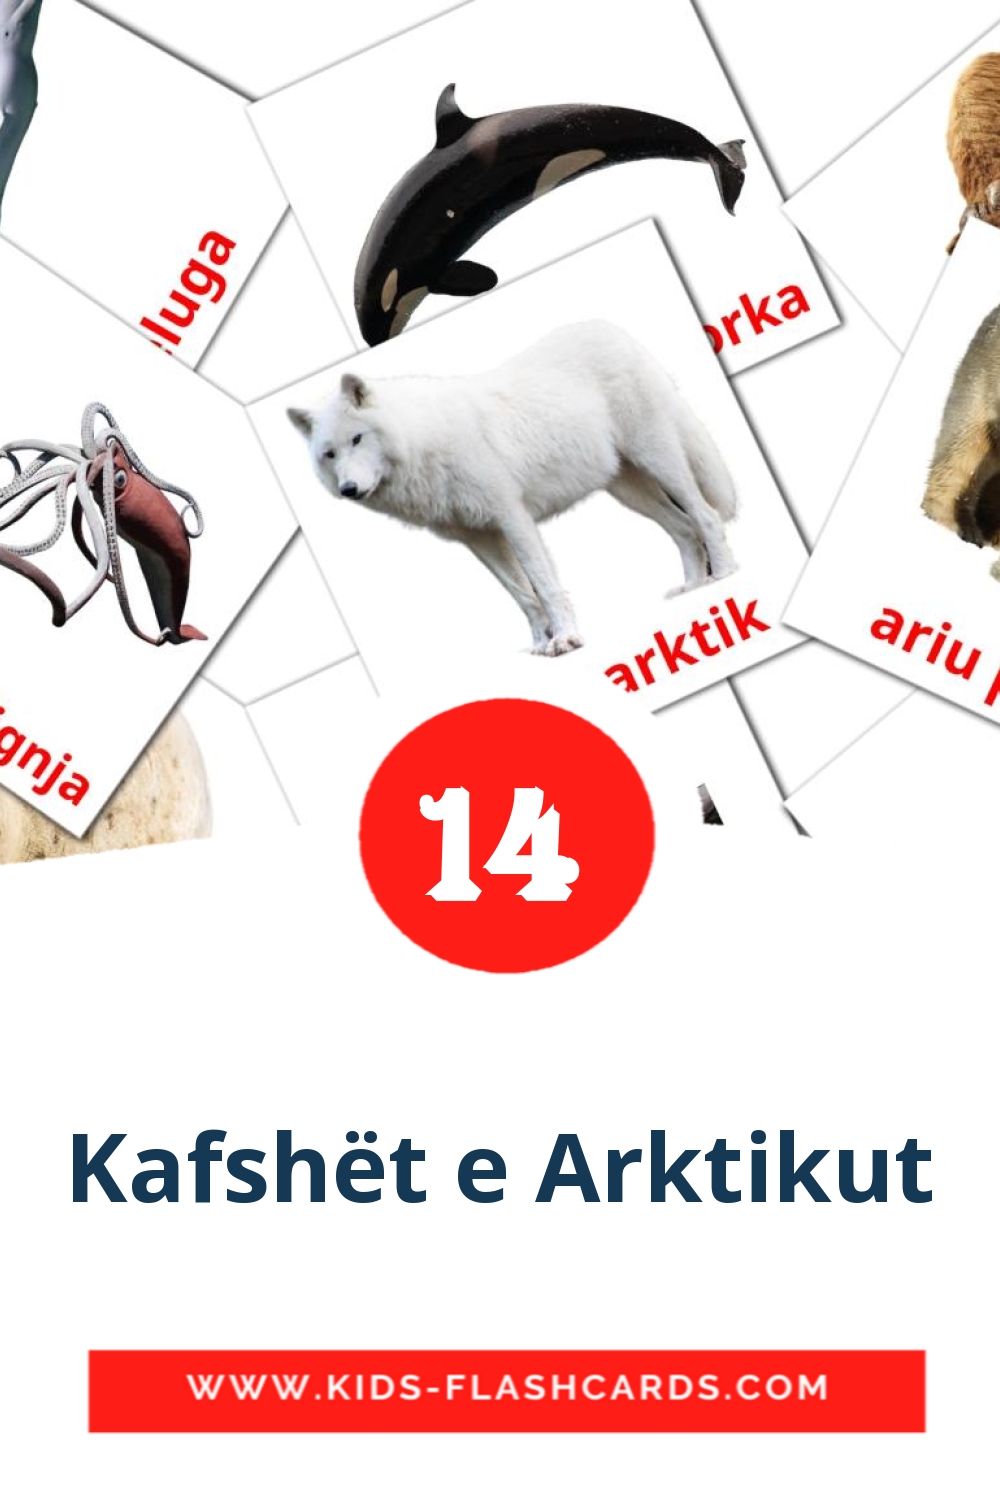 14 tarjetas didacticas de Kafshët e Arktikut para el jardín de infancia en albanés